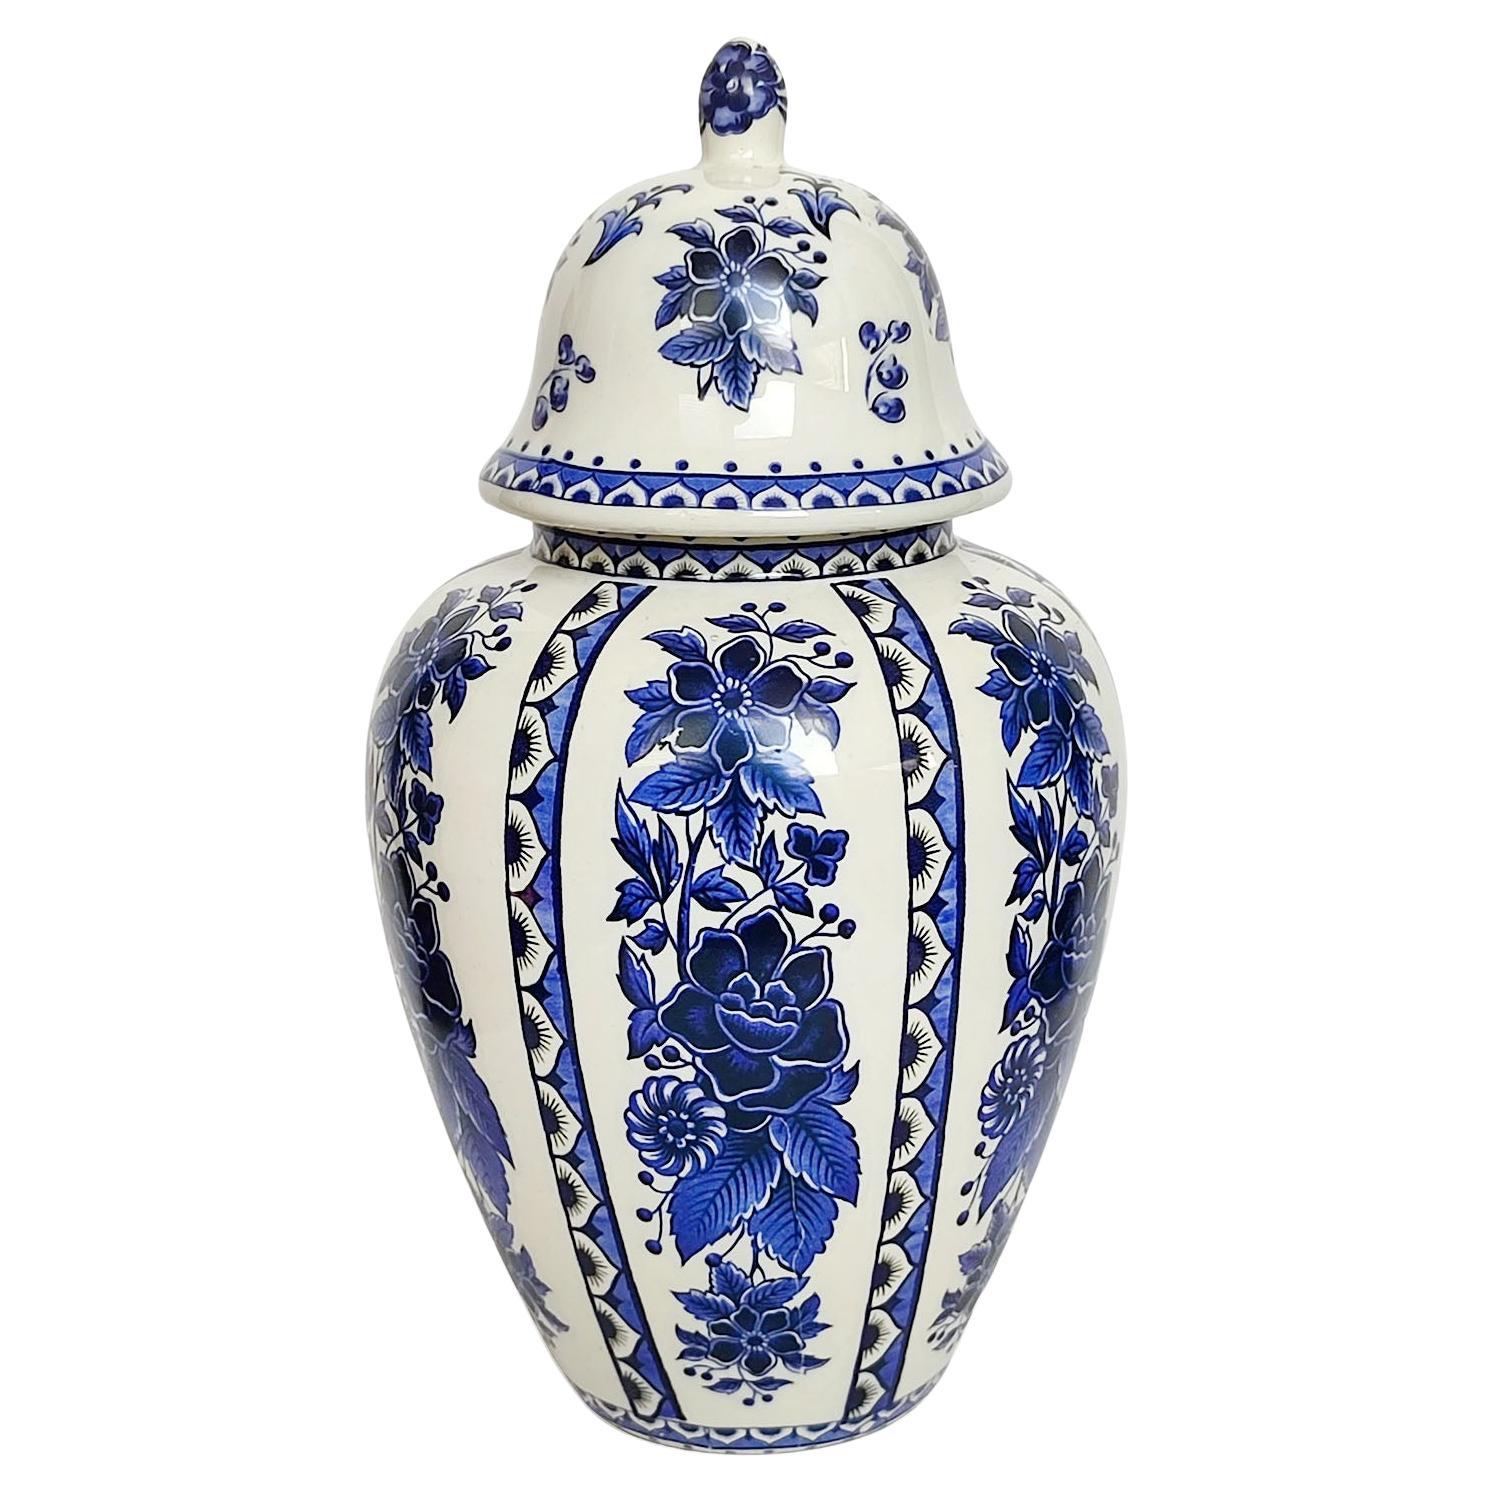 Grand vase vintage de Delft avec couvercle, glaçure blanche avec décor bleu, LIVRAISON GRATUITE en vente